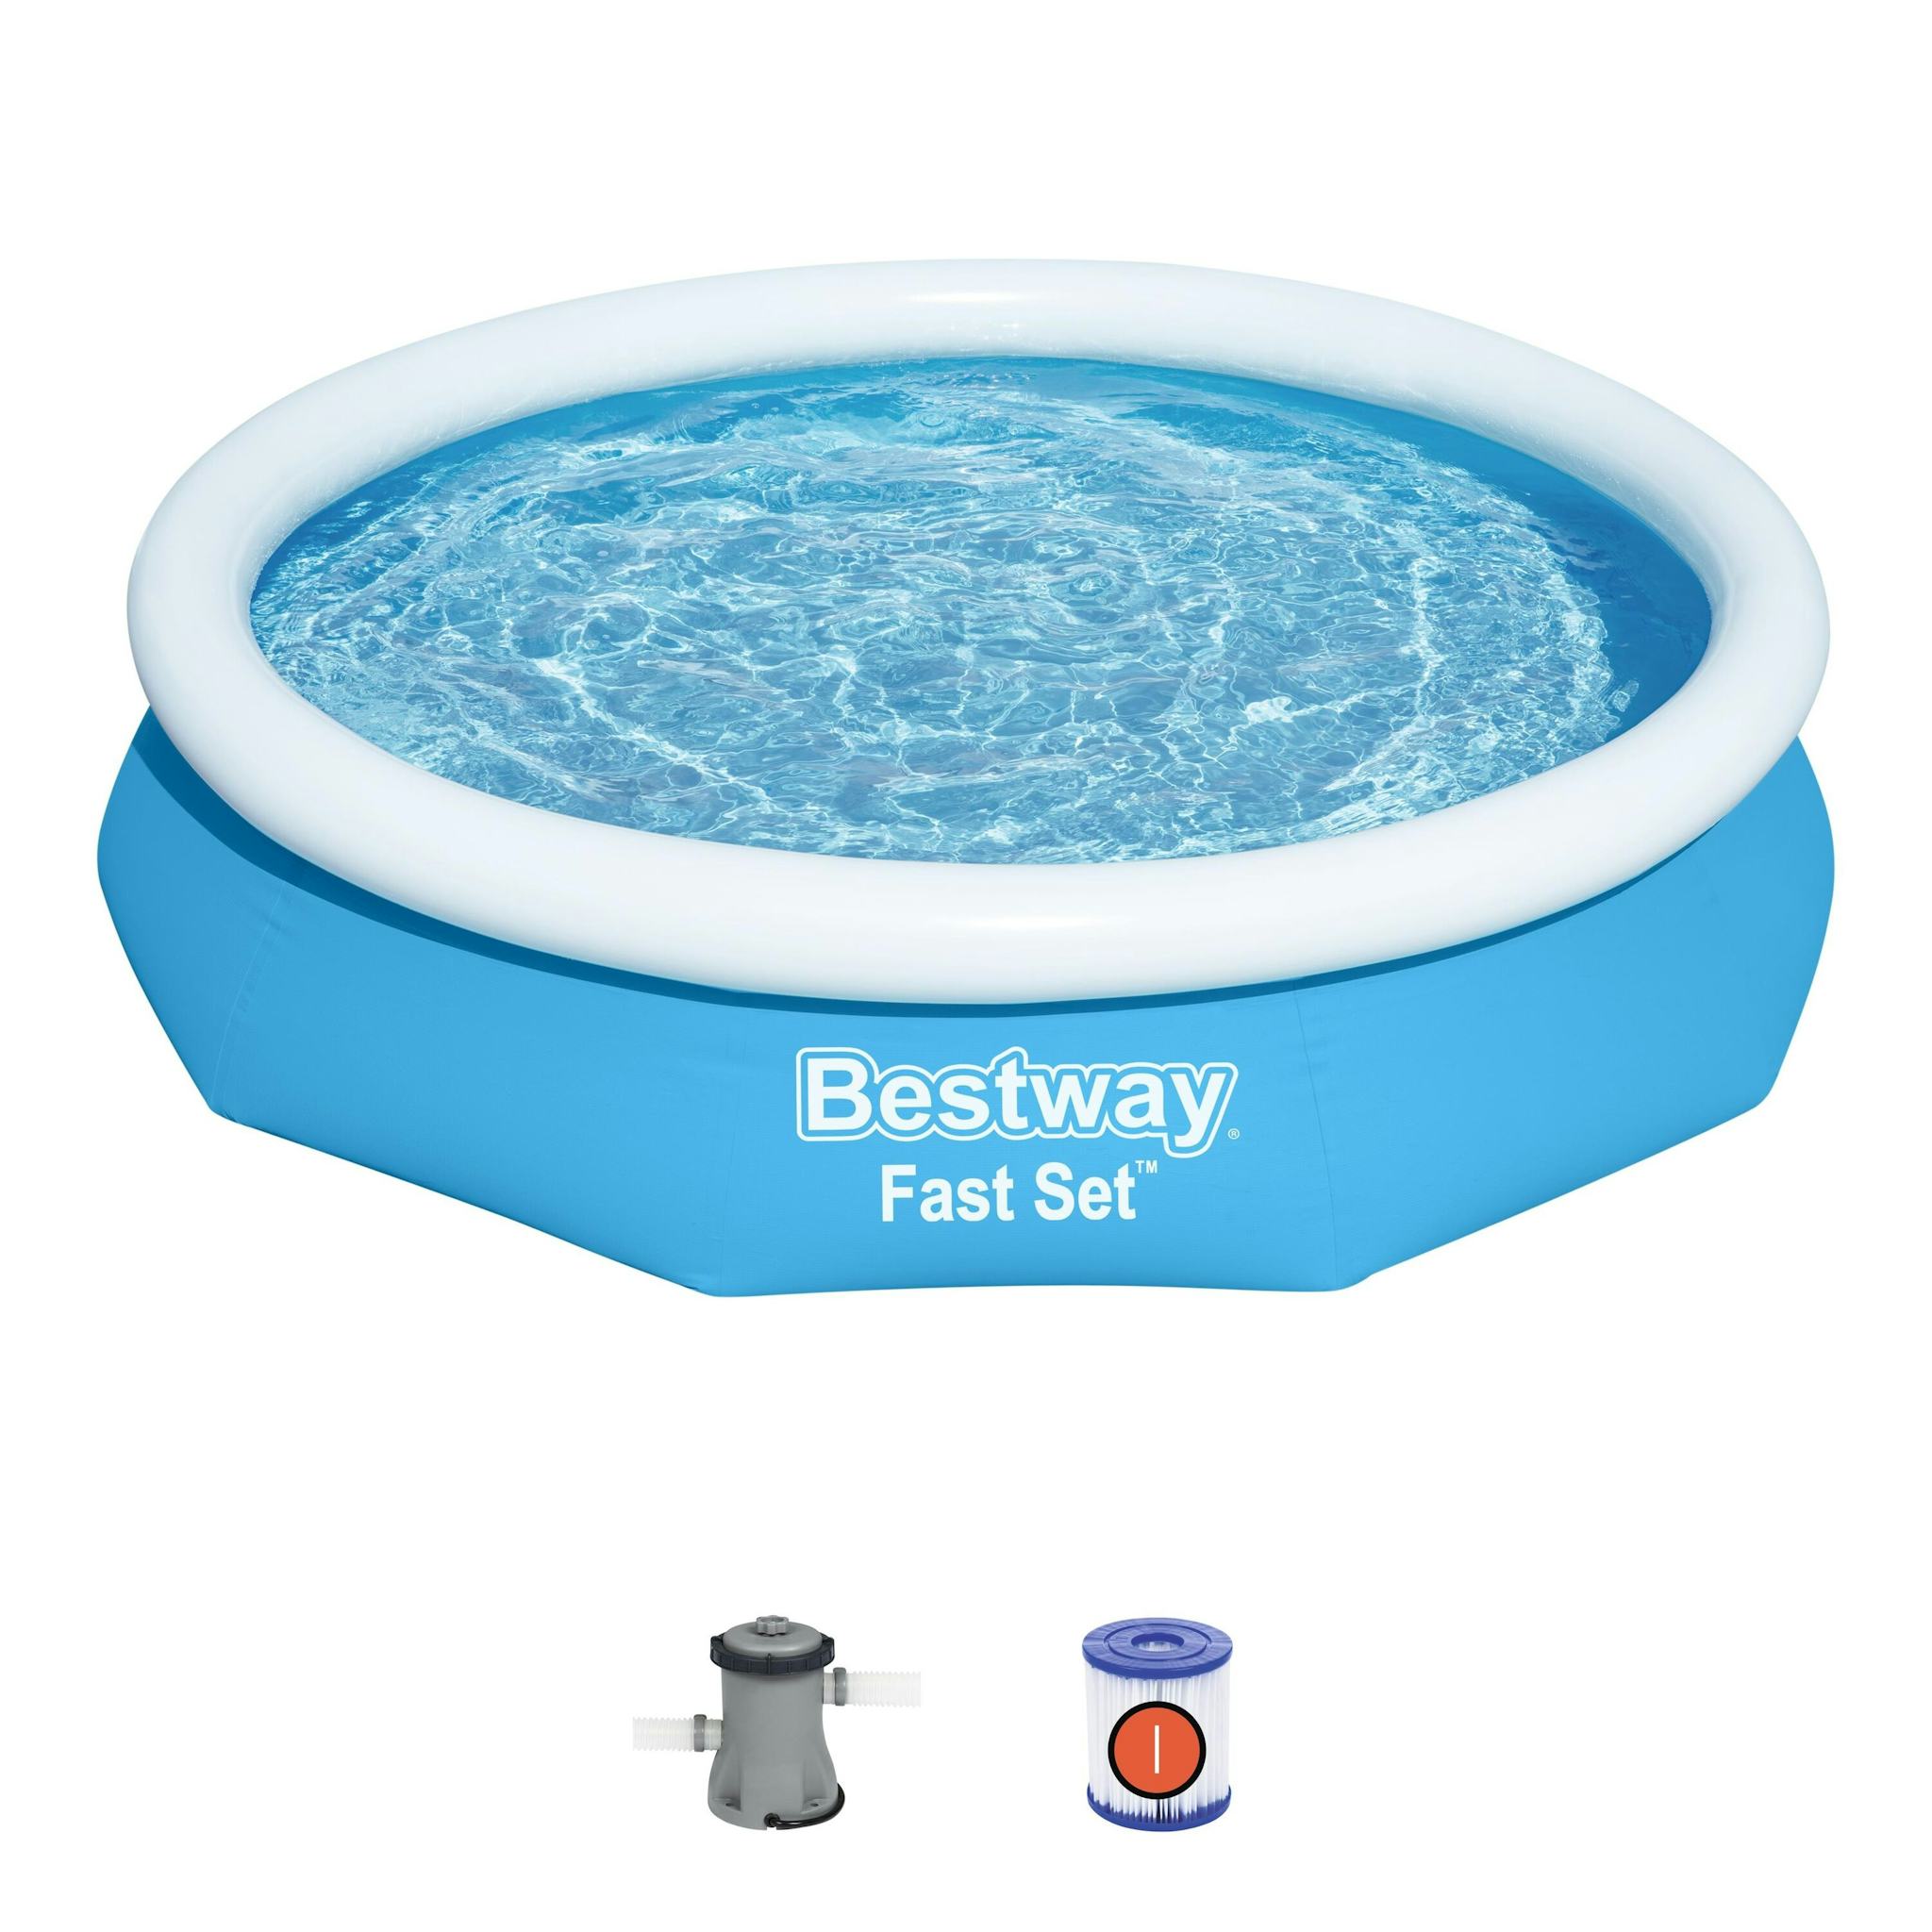 Bovengronds zwembad Fast Set bovengrondse ronde opblaasbare set van 305x66 cm blauw Bestway 2